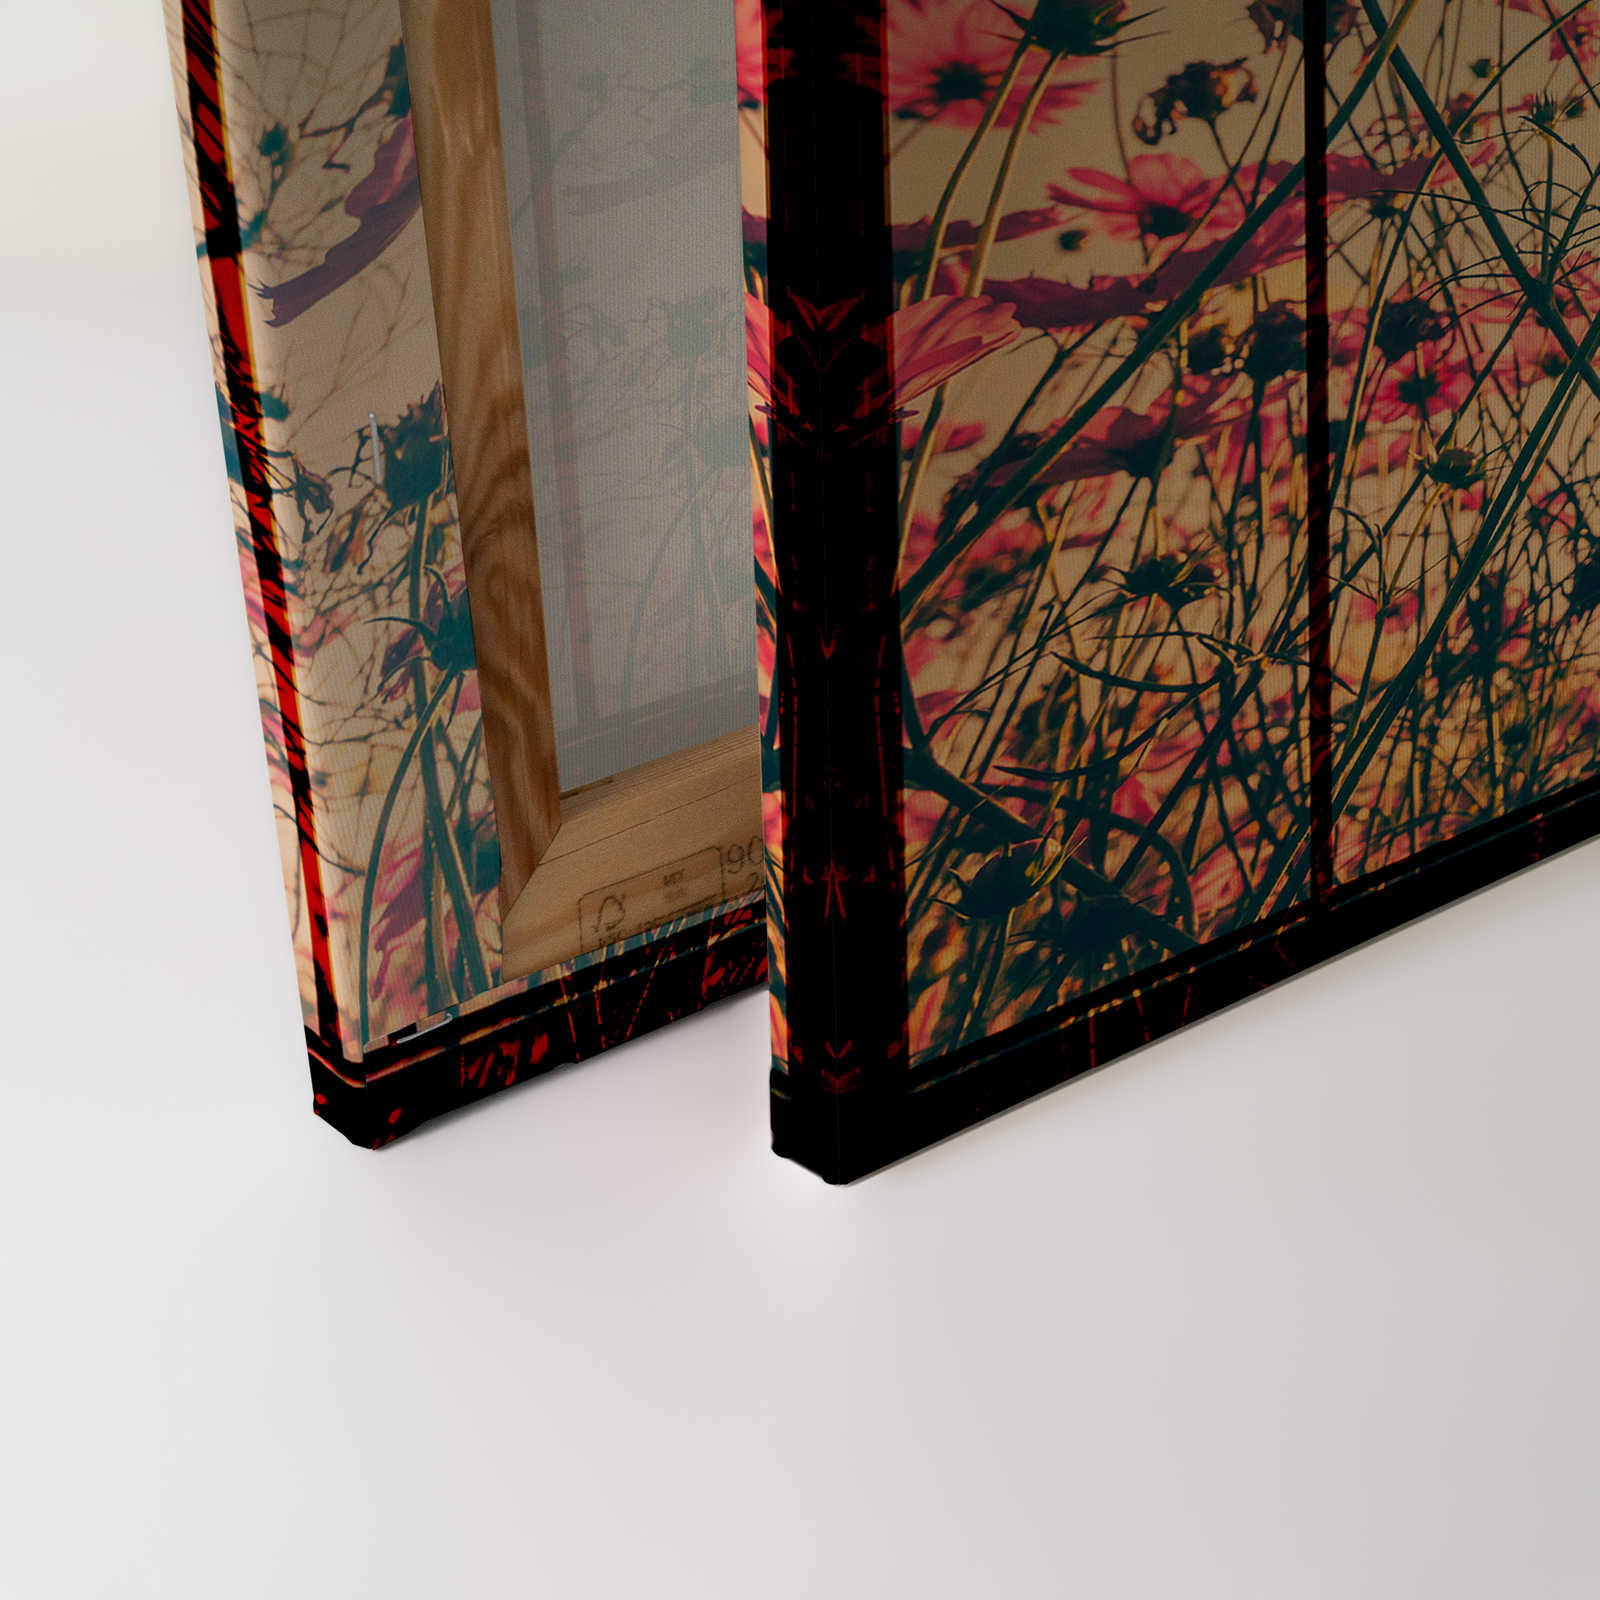             Prato 1 - Quadro su tela di Muntin con prato fiorito - 0,90 m x 0,60 m
        